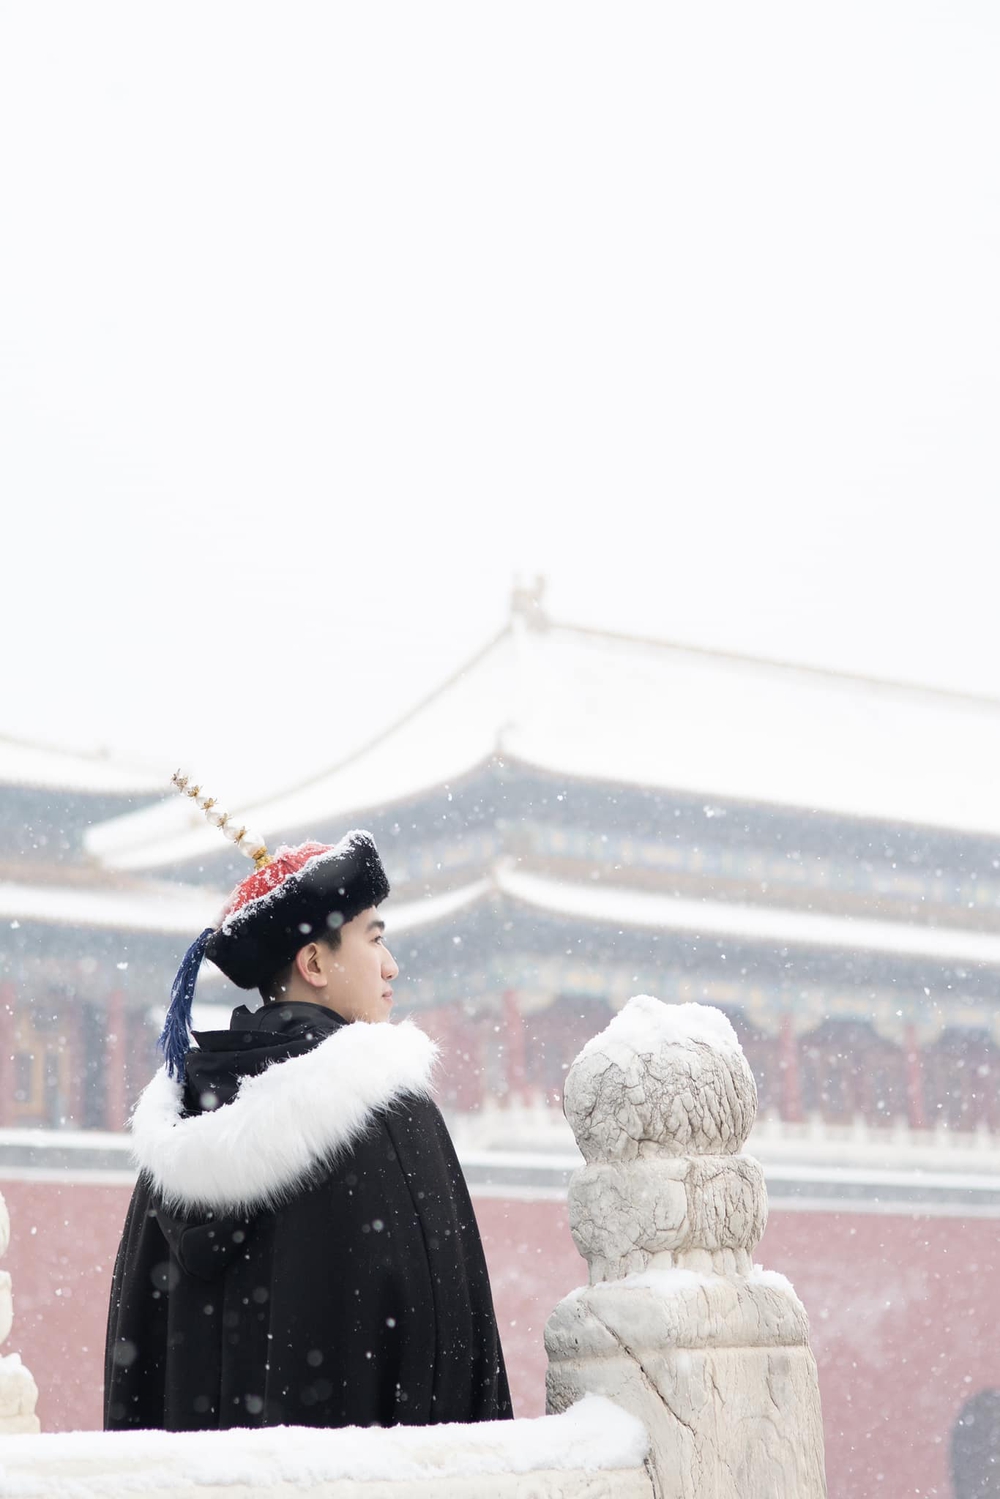 Du khách Việt may mắn được săn tuyết rơi đầu mùa đẹp như phim ở Tử Cấm Thành (Trung Quốc) - Ảnh 13.